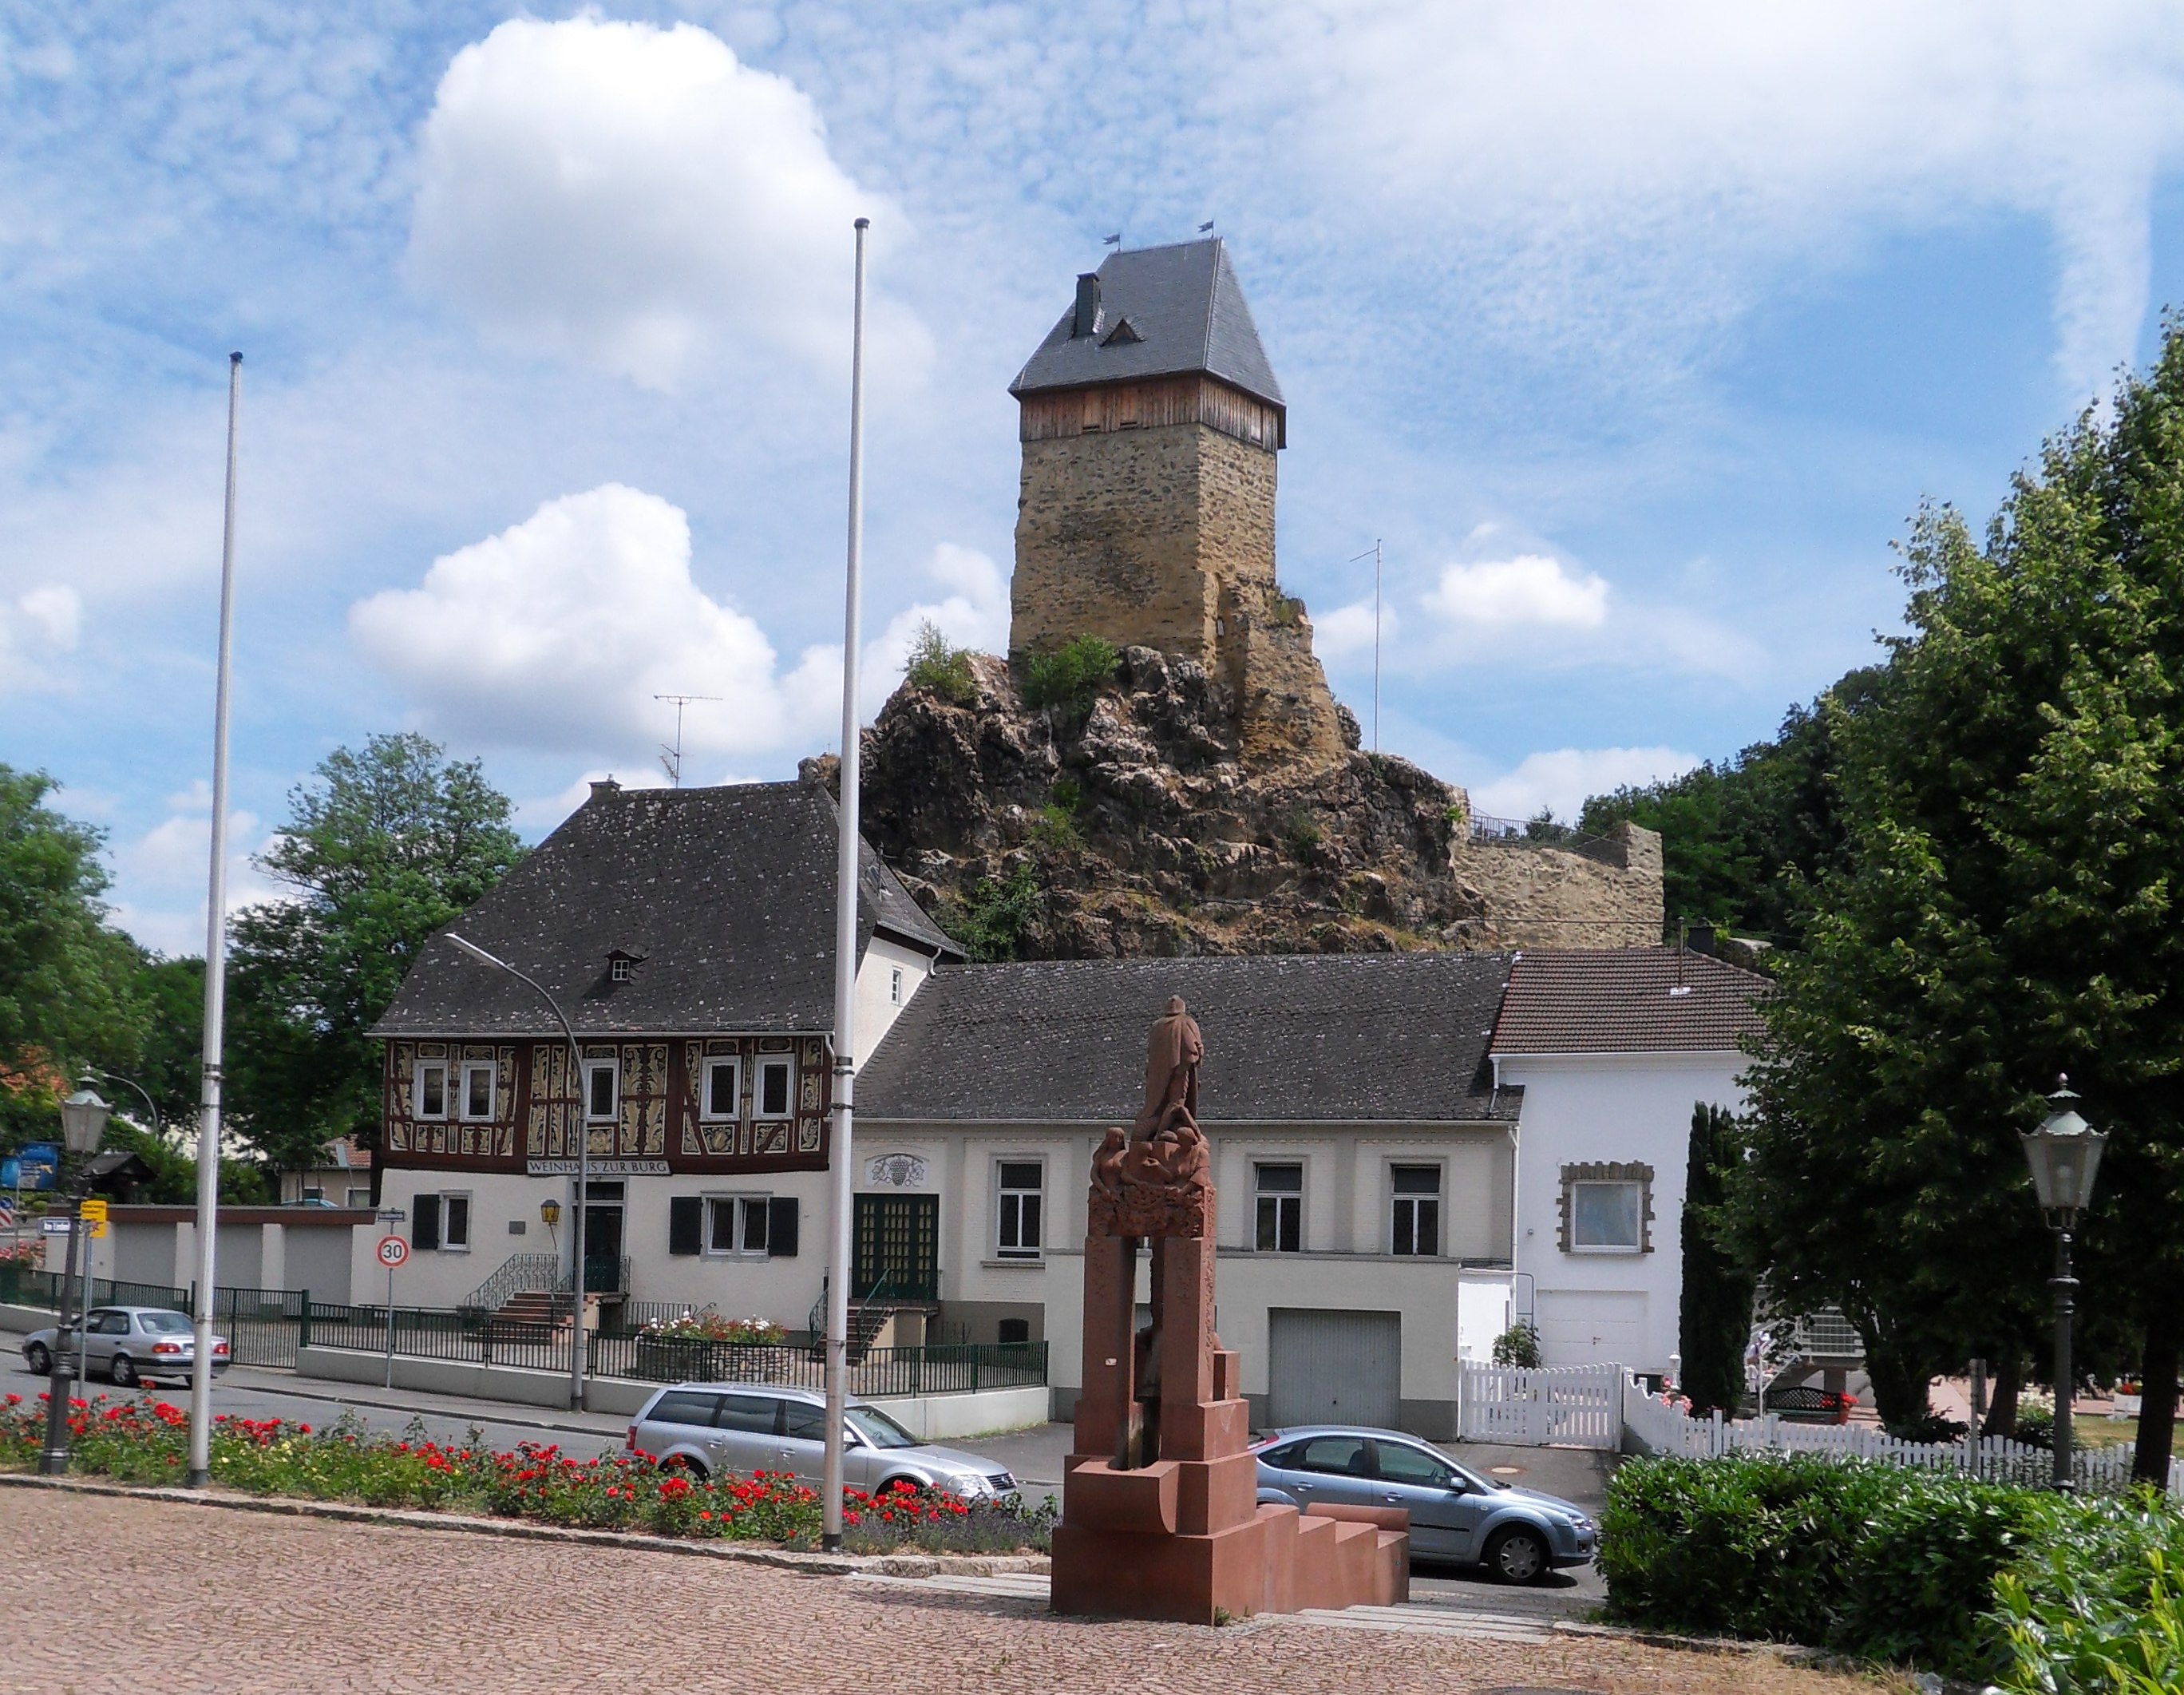 Blick nach Osten vom Kirchvorplatz in Wiesbaden-Frauenstein über den Georgsbrunnen, die Kirschblütenstraße und das „Weinhaus zur Burg“ hin zur Burg und dem Burgfelsen